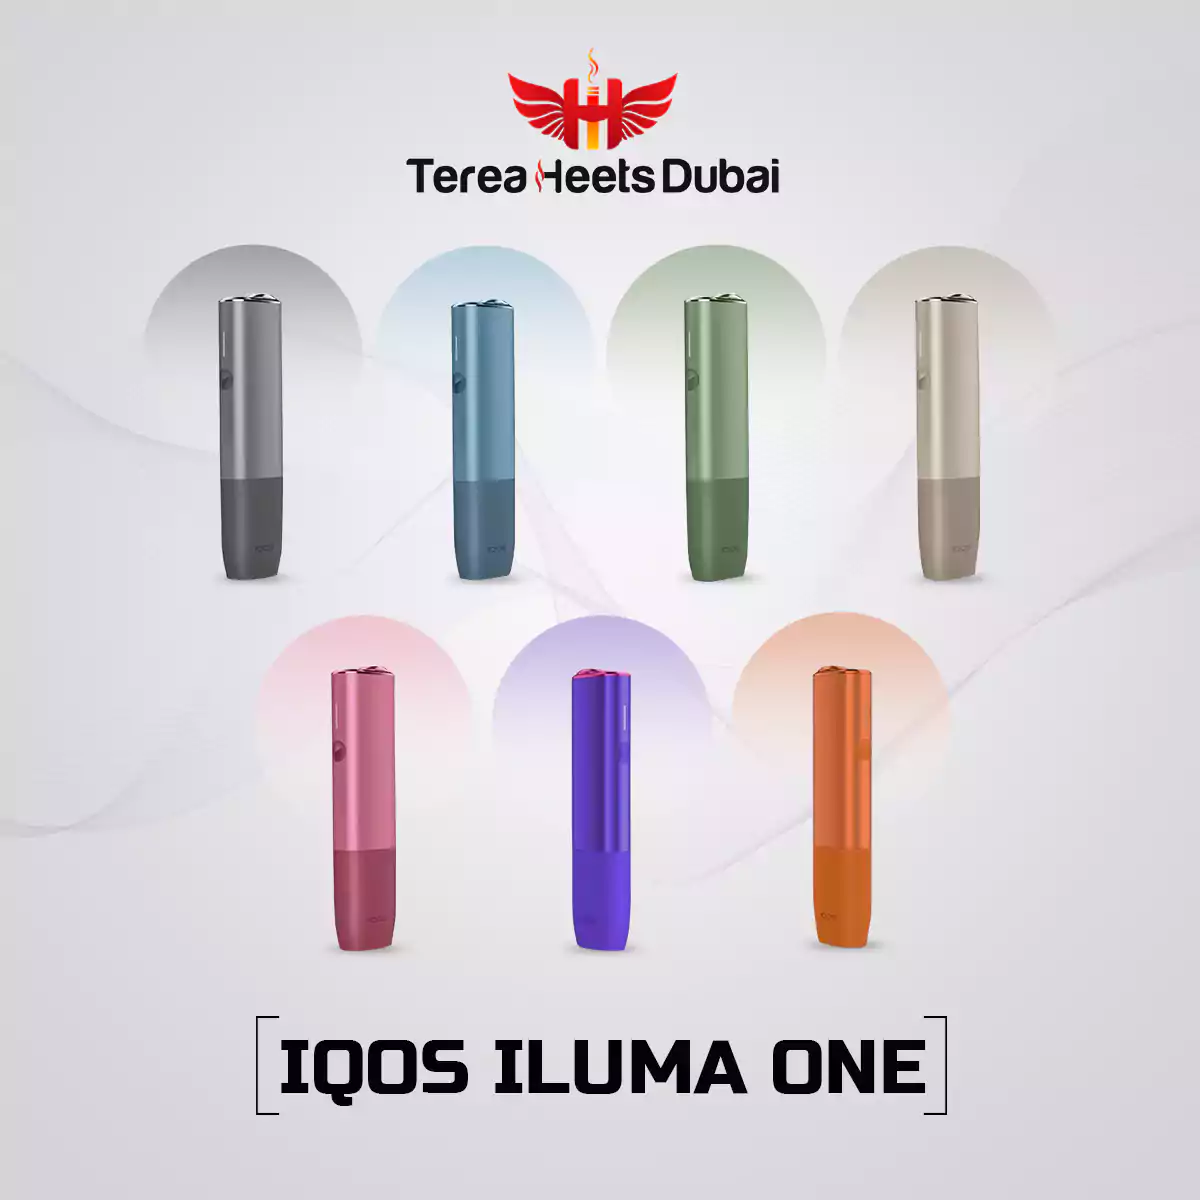 Original IQOS ILUMA One In UAE Now Available